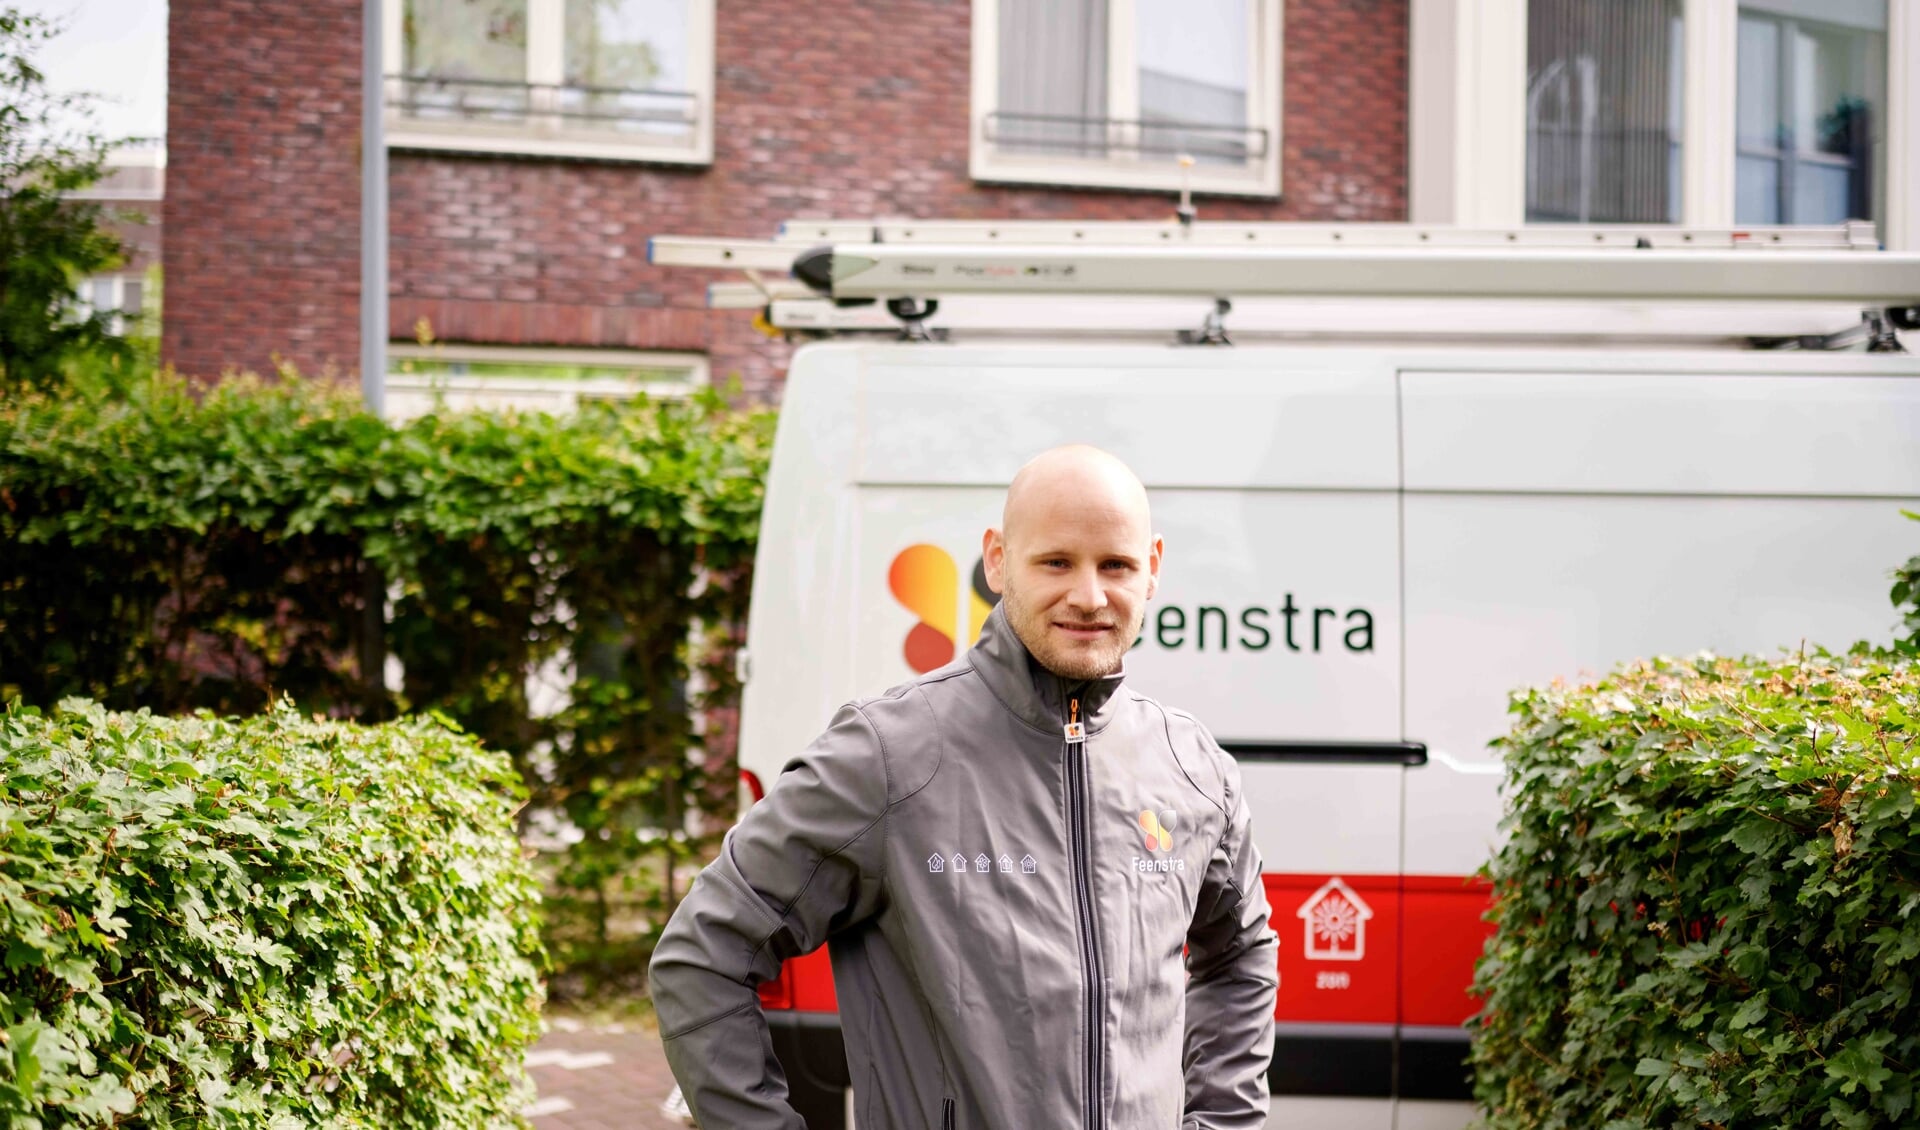 Jeffrey Tulp, verwarmingsspecialist voor Zuid-Holland: “Mensen vragen mij vaak hoe ze zo slim mogelijk met energie kunnen omgaan en de energiekosten kunnen drukken. Als monteur kom ik veel bij de mensen thuis. Elke woning is anders en ook de energiewensen zijn anders. Daarom hierbij 18 tips. Voor iedereen zitten daar wel bruikbare oplossingen tussen.”